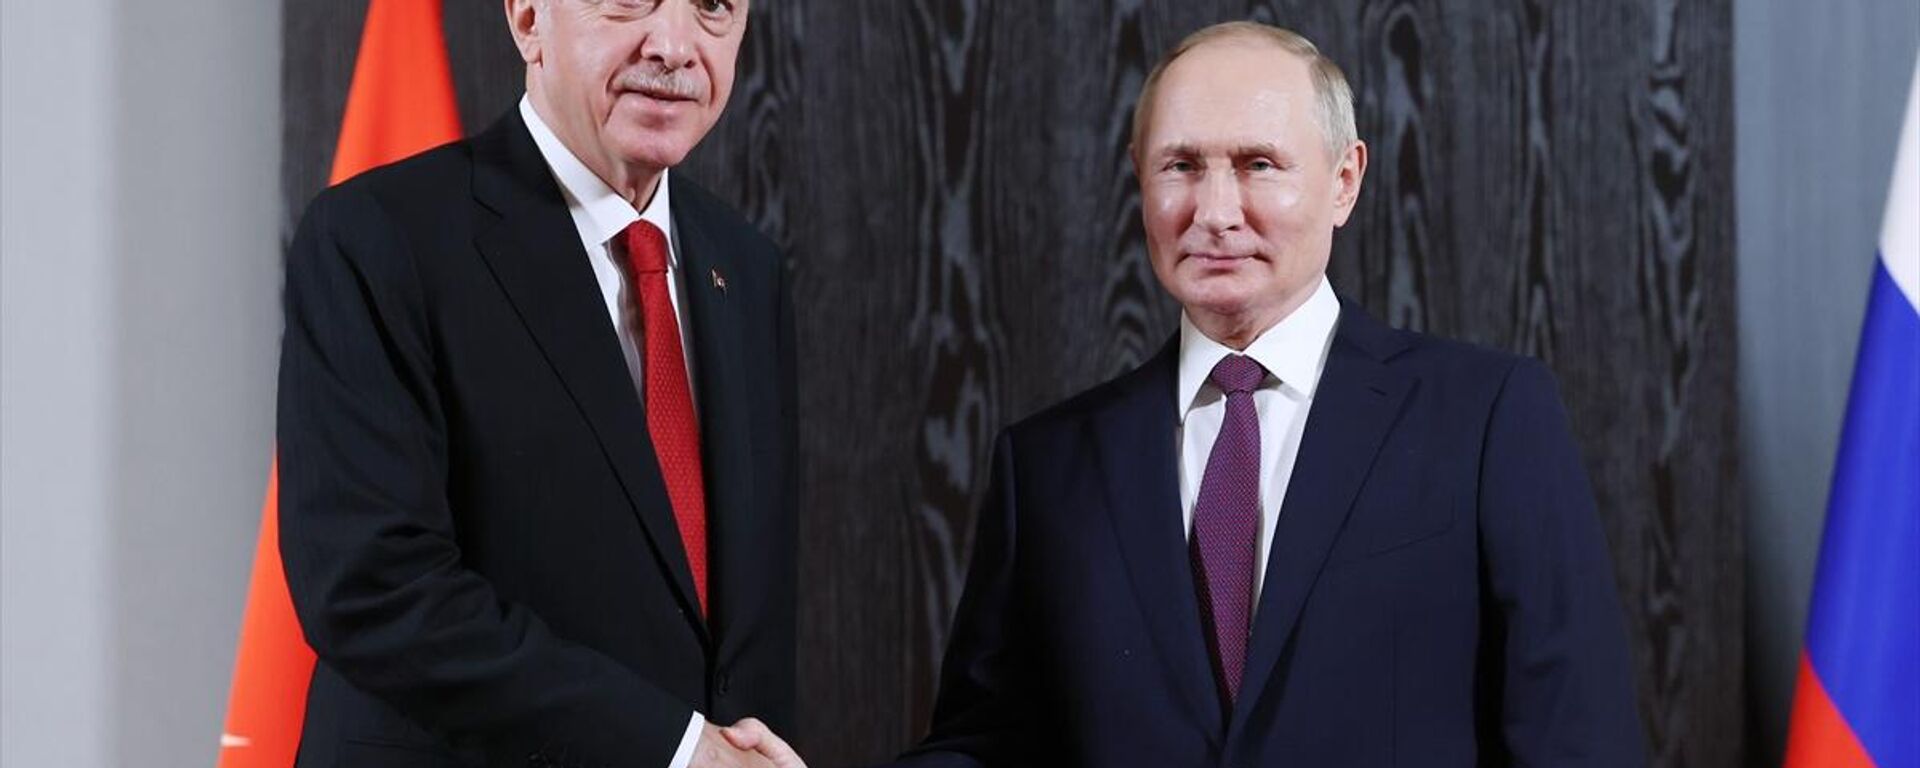 Cumhurbaşkanı Erdoğan'ın, Rusya Devlet Başkanı Putin ile görüştü - Sputnik Türkiye, 1920, 05.01.2023